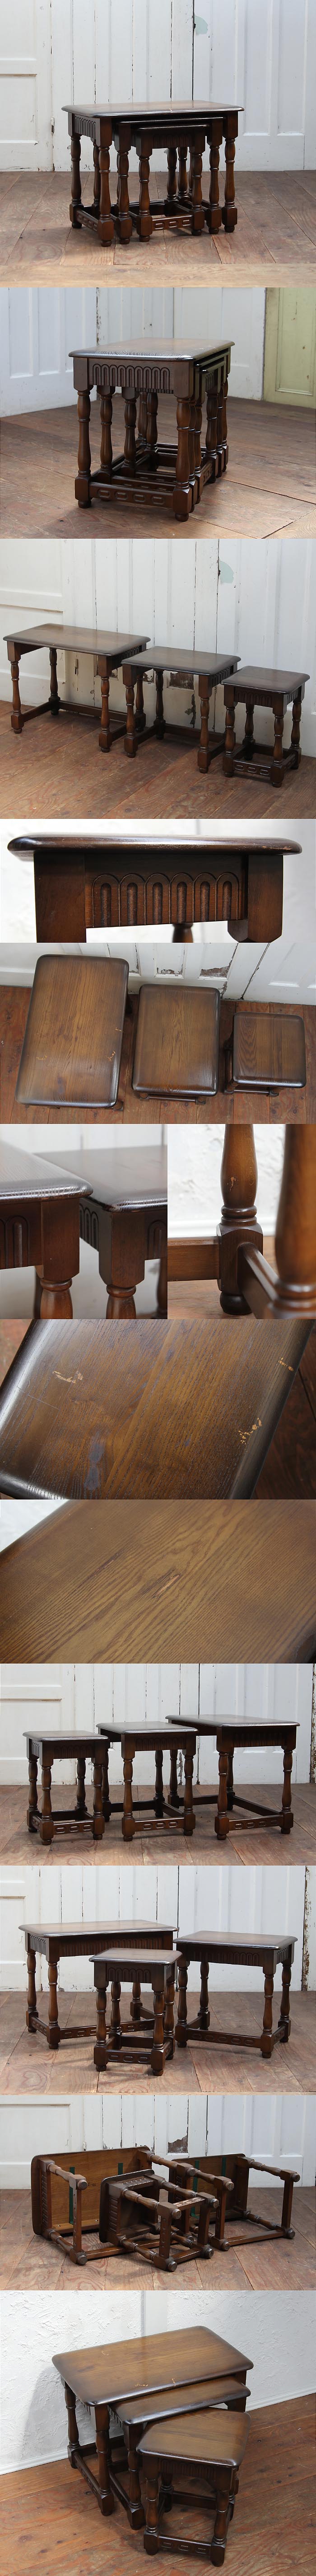 イギリス アンティーク調 ネストテーブル 木製 ローテーブル 装飾 家具「重厚なつくり」P-246